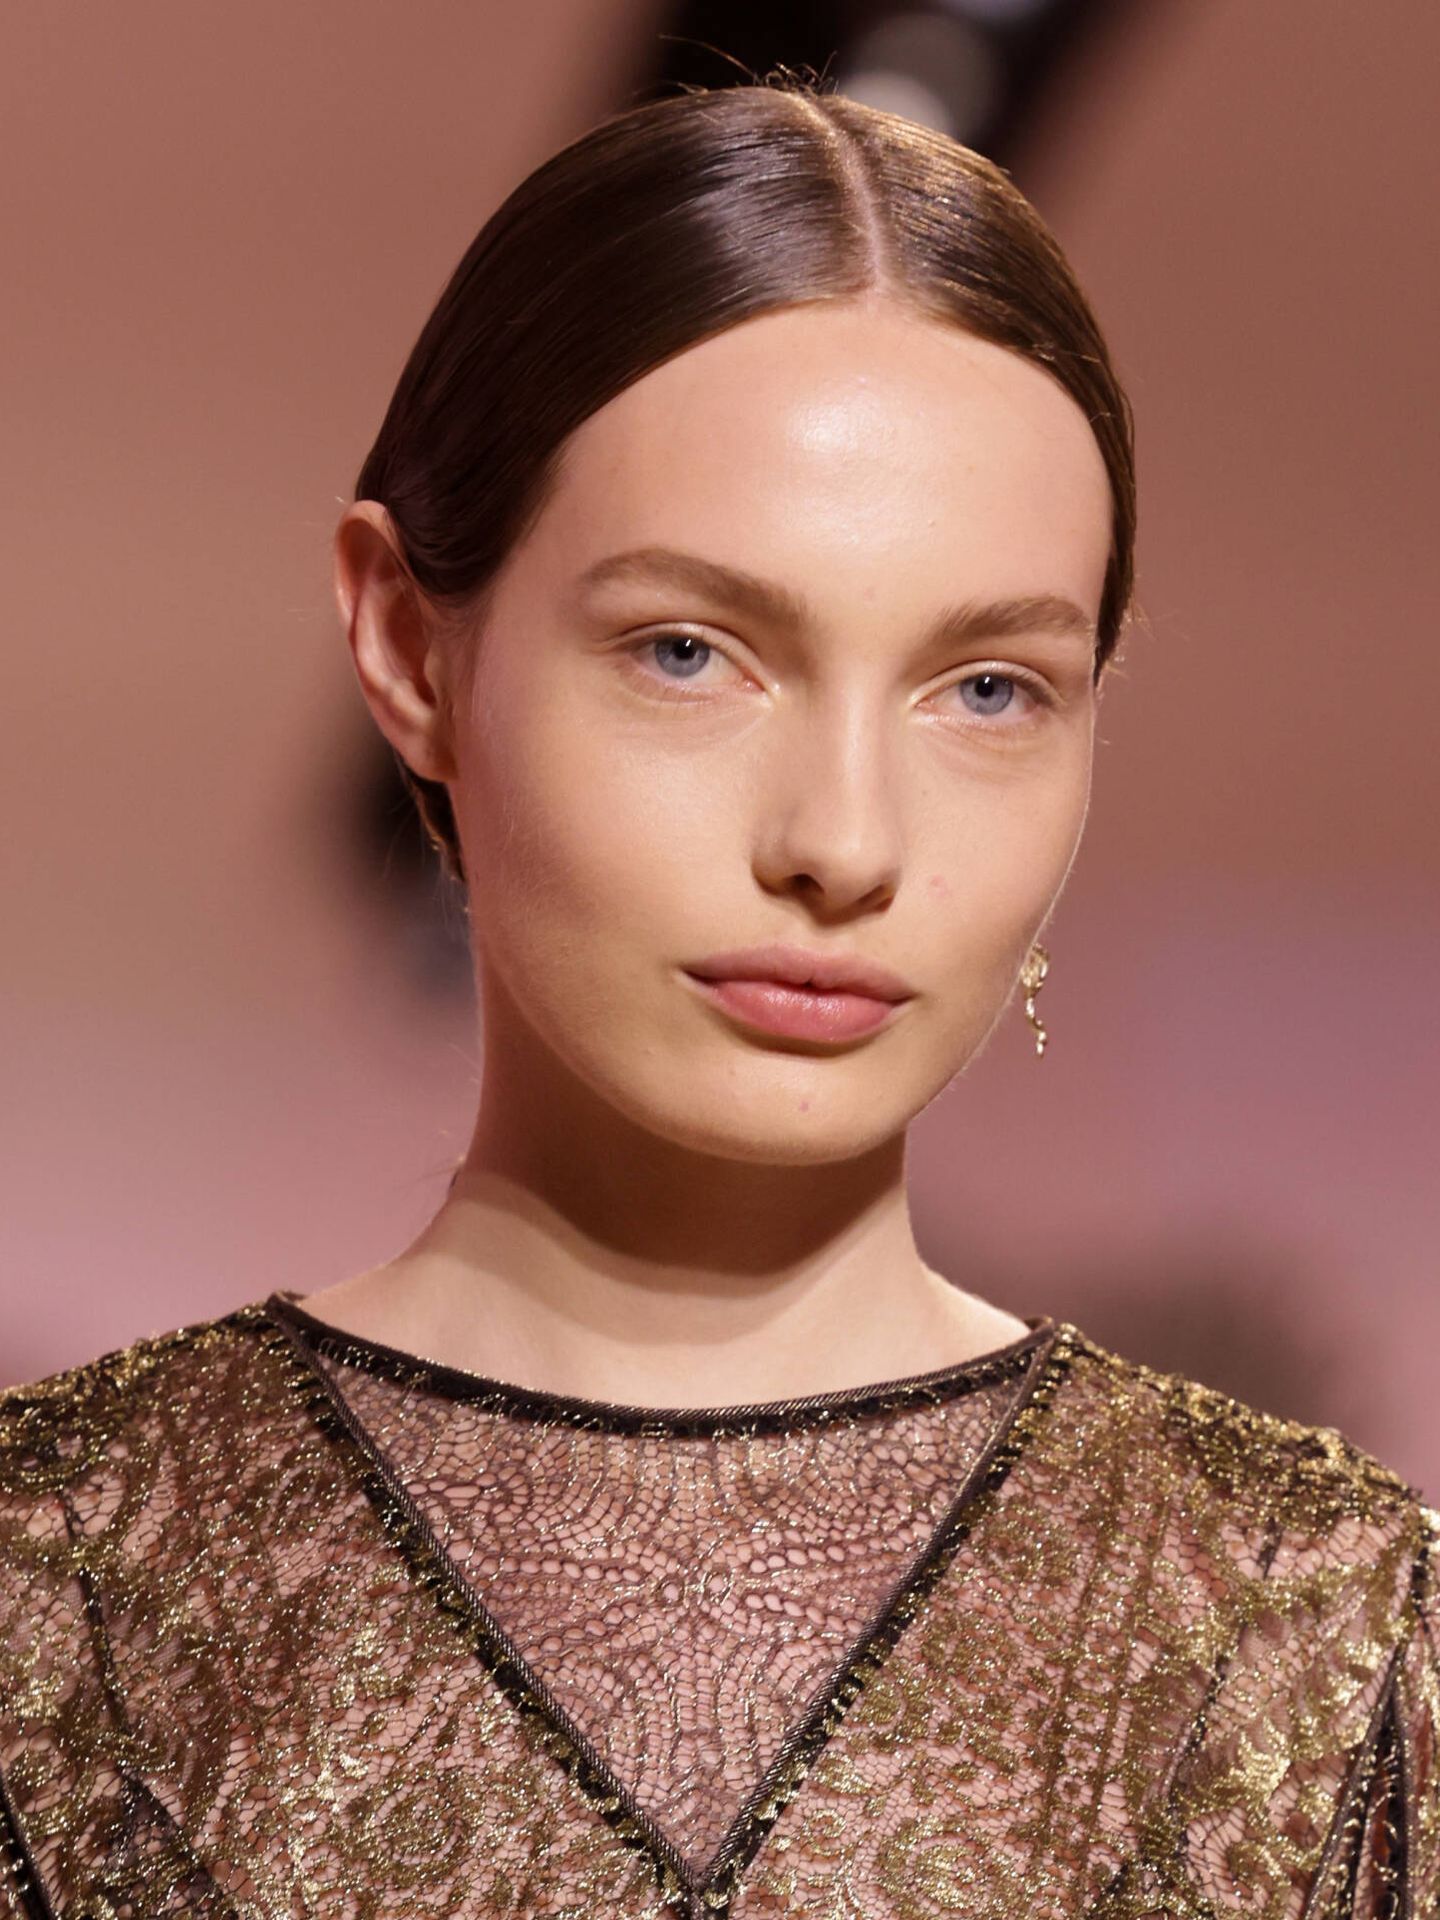 Las pieles 'flawless', llenas de luz, se han convertido en la base habitual de los desfiles de Dior. (Getty/Pascal Le Segretain)